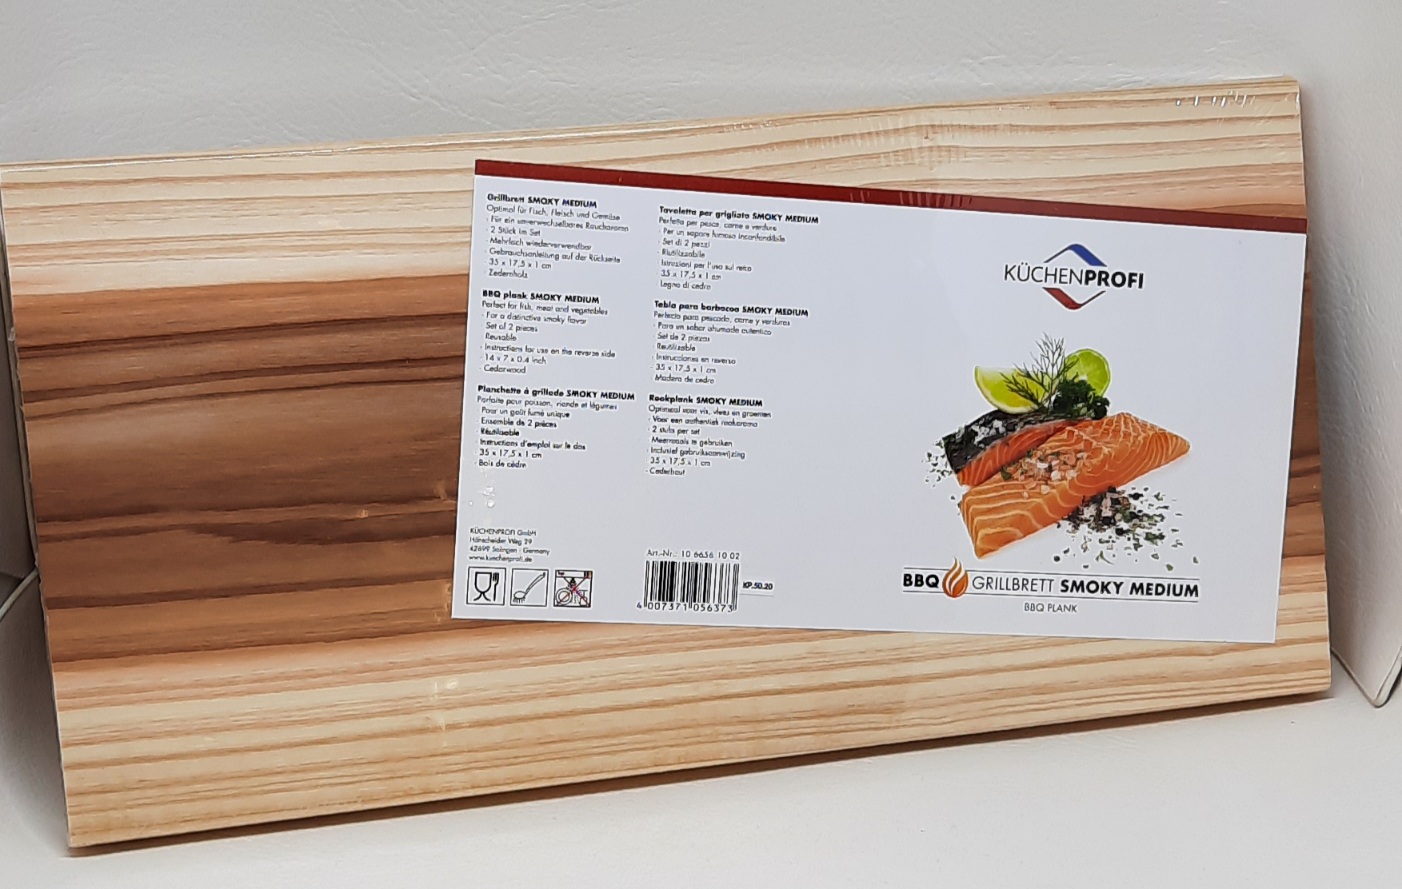 Grillbrett SMOKY MEDIUM 2 Stück Zedernholz, Mehrfach wiederverwendbar,  unverwechselbares Raucharoma, für Fisch,Gemüse...